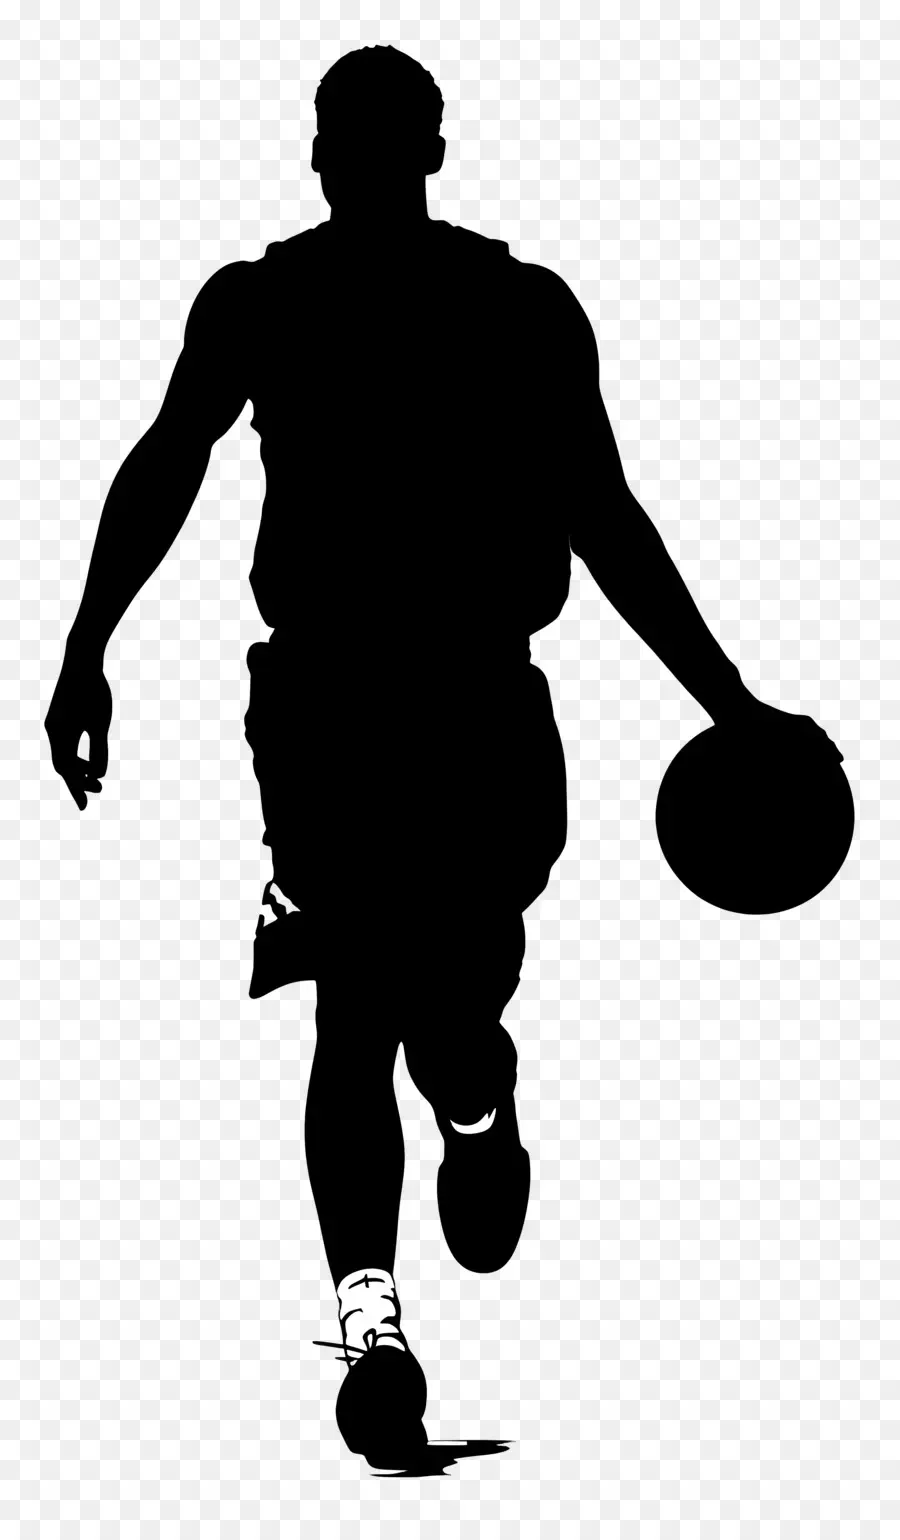 Basketball Man Silhouette Walking Uniform Destination Shadow - Persona in uniforme che trasporta un oggetto non identificato, ombre visibili